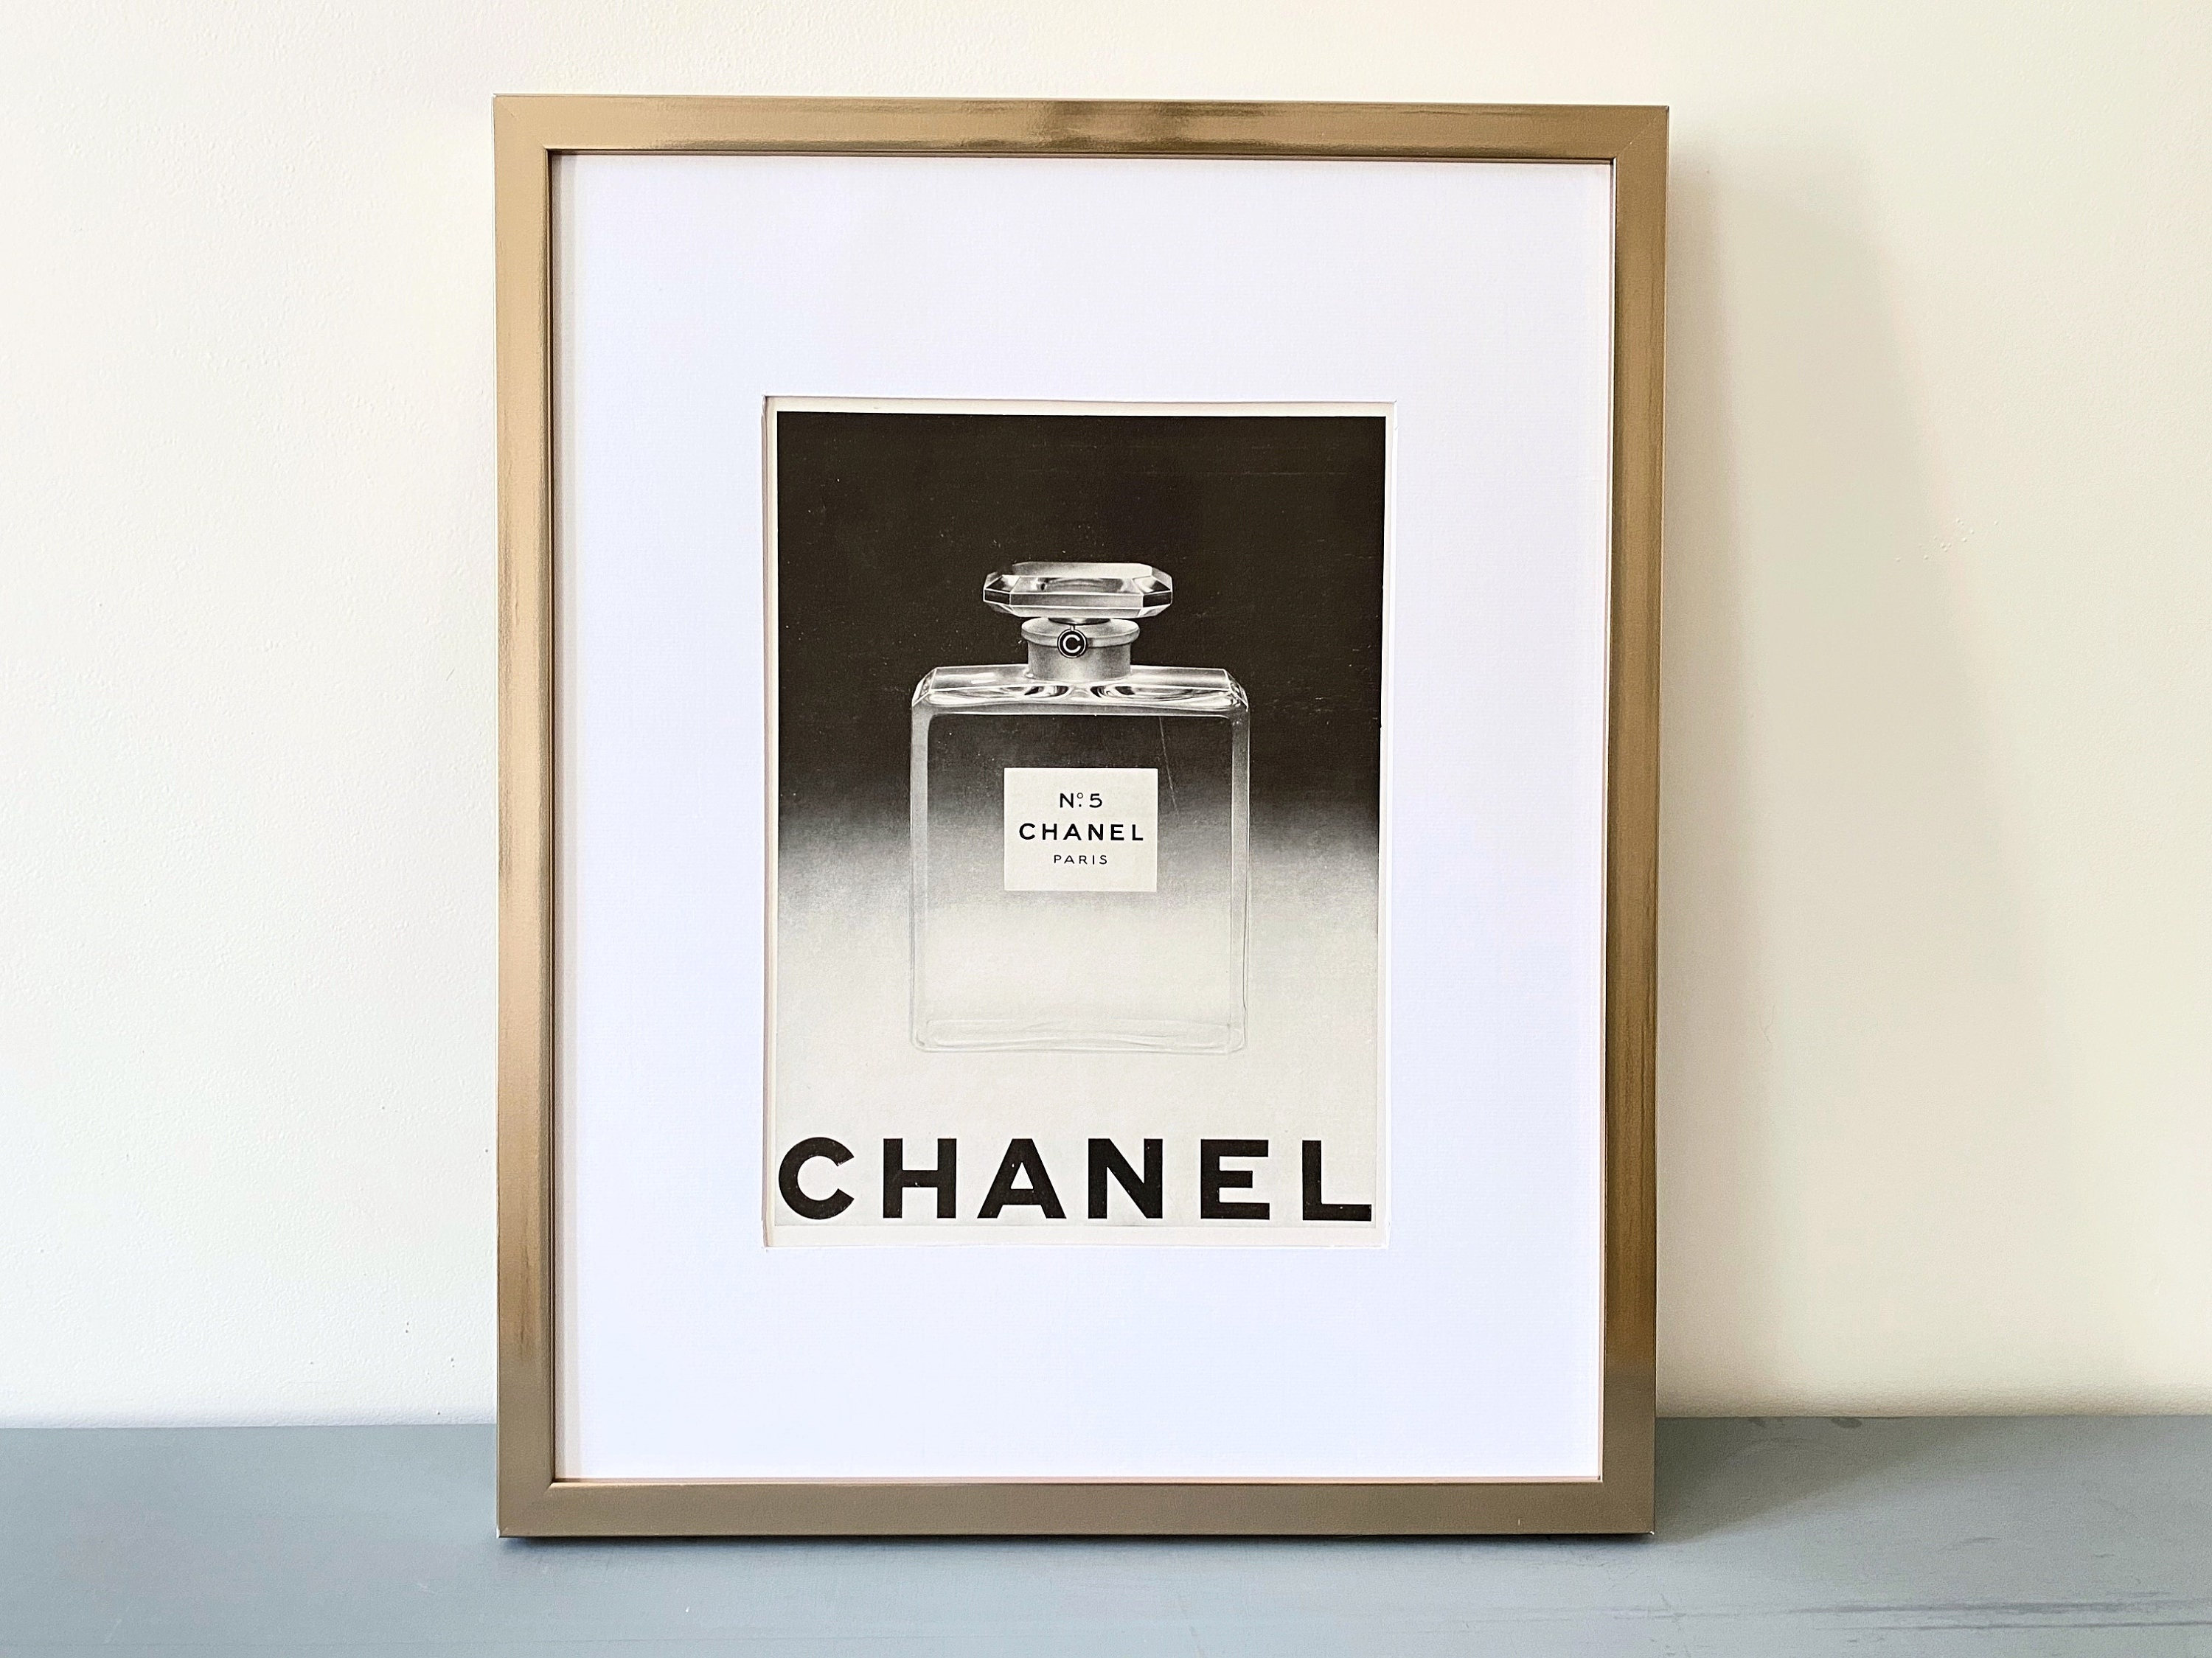 Chanel No 5 Art for Sale - Fine Art America